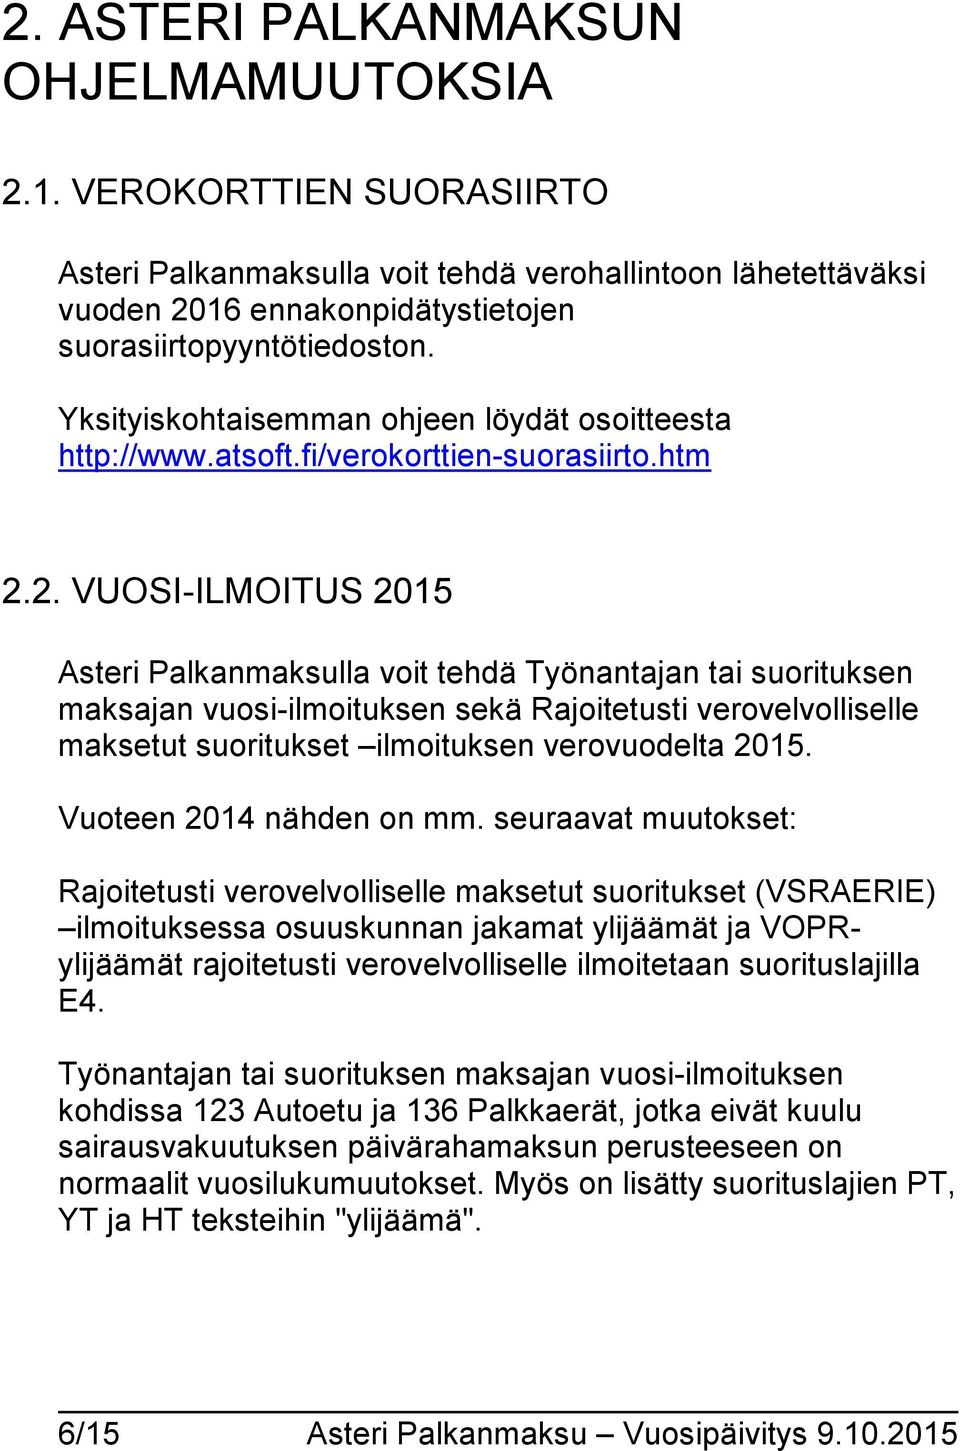 2. VUOSI-ILMOITUS 2015 Asteri Palkanmaksulla voit tehdä Työnantajan tai suorituksen maksajan vuosi-ilmoituksen sekä Rajoitetusti verovelvolliselle maksetut suoritukset ilmoituksen verovuodelta 2015.